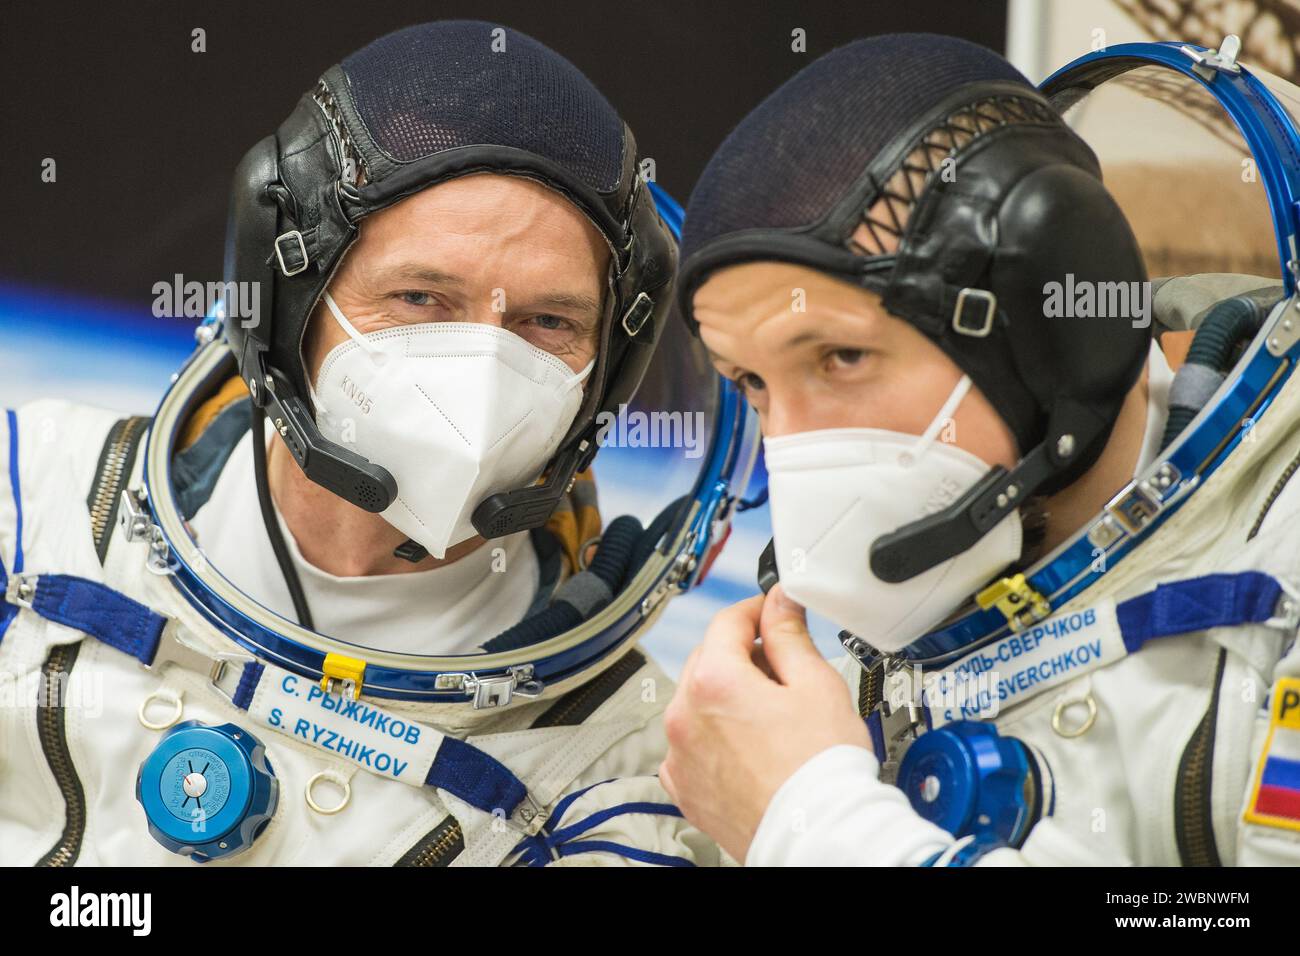 Expedition 64 die russischen Kosmonauten Sergej Ryzhikow (links) und Sergej Kud-Swerchkow (rechts) von Roscosmos werden beobachtet, nachdem sie sich mit der NASA-Astronautin Kate Rubins auf den Sojus-Start auf die Internationale Raumstation am Mittwoch, den 14. Oktober 2020, im Baikonur-Kosmodrome in Kasachstan vorbereitet haben. Das Trio startete um 1:45 Uhr EDT, um eine sechsmonatige Mission an Bord der Internationalen Raumstation zu beginnen. Stockfoto